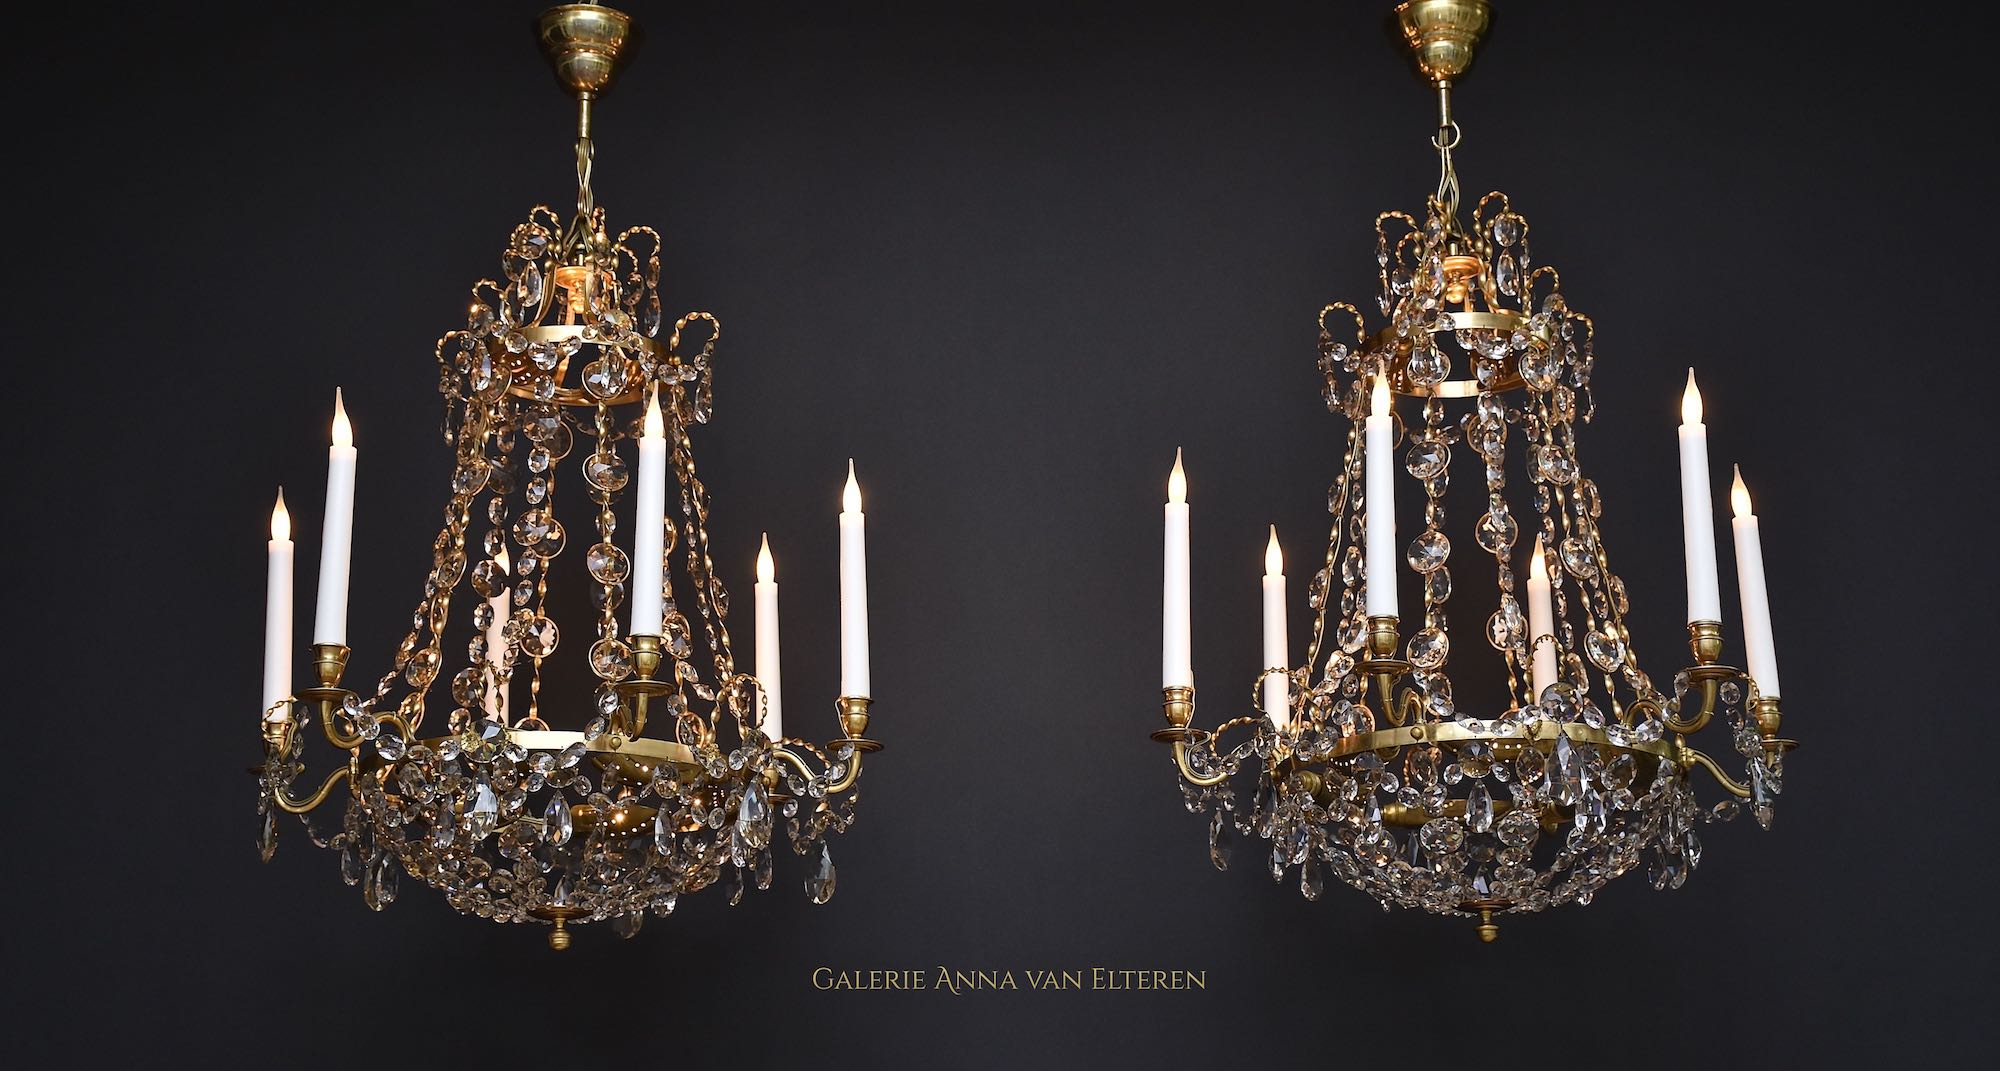 Two Swedish Gustavian style chandeliers